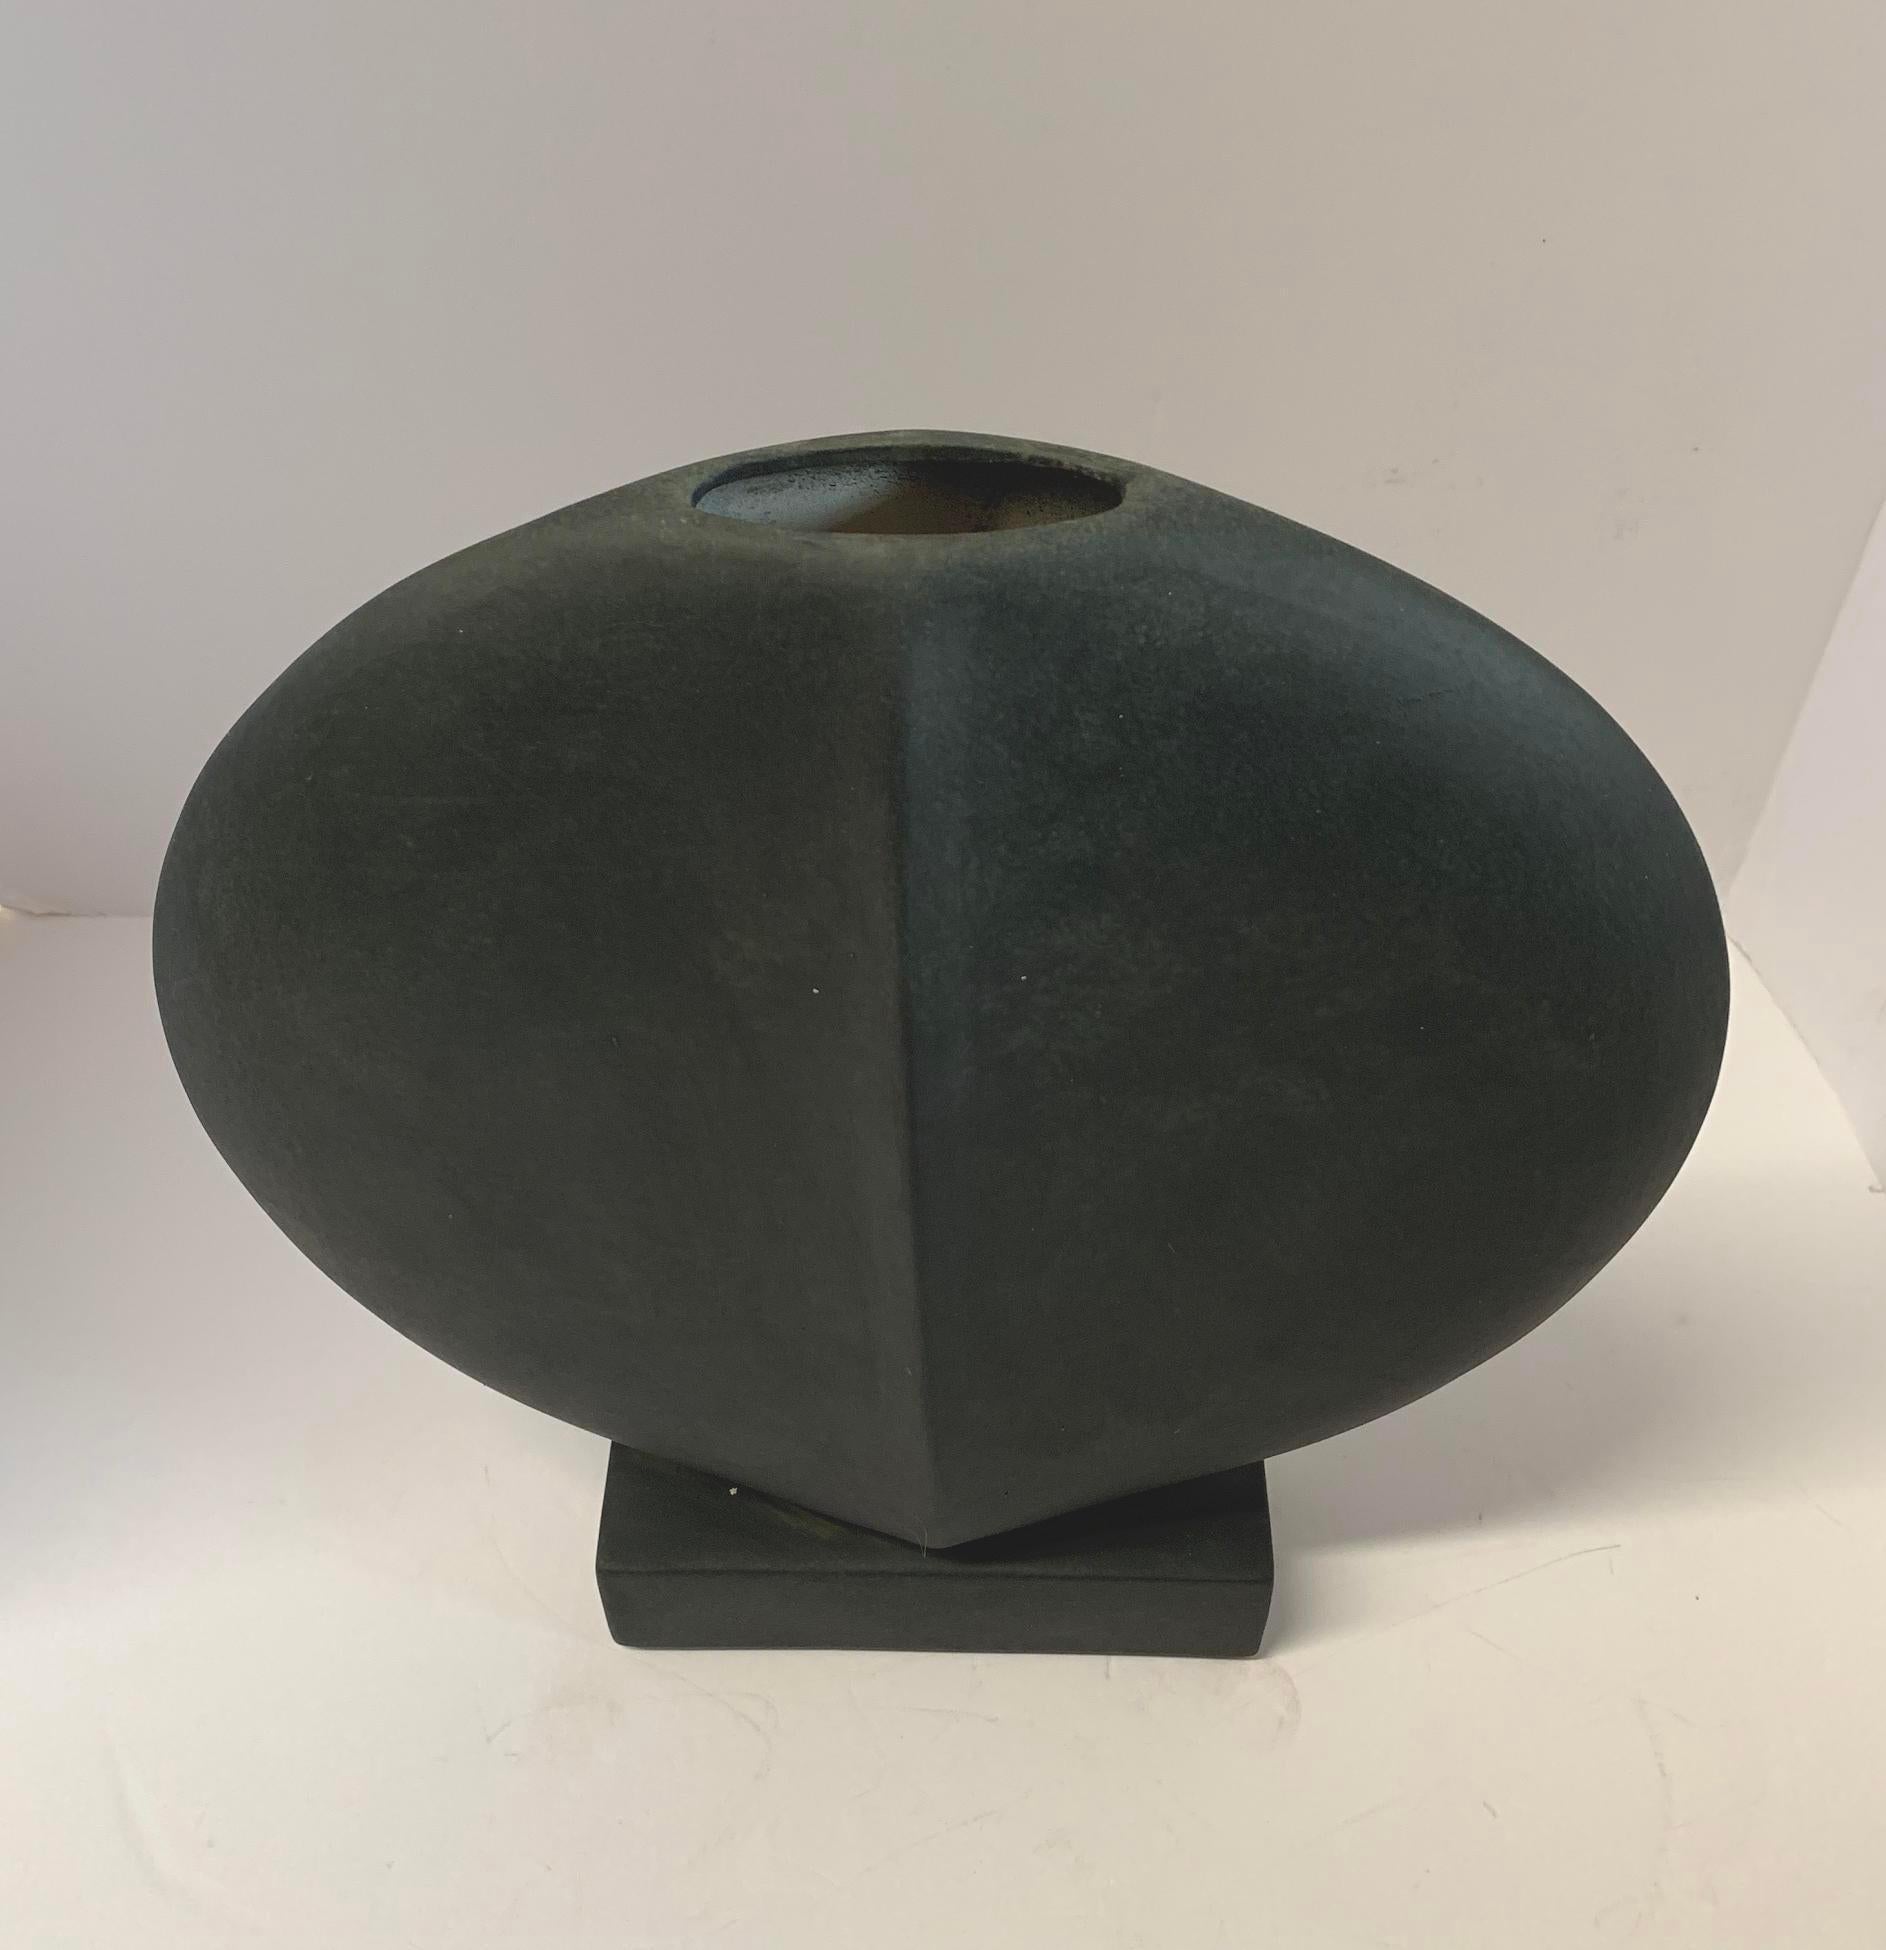 Mattgraue große runde Keramikvase im dänischen Design, China, Contemporary (Chinesisch)